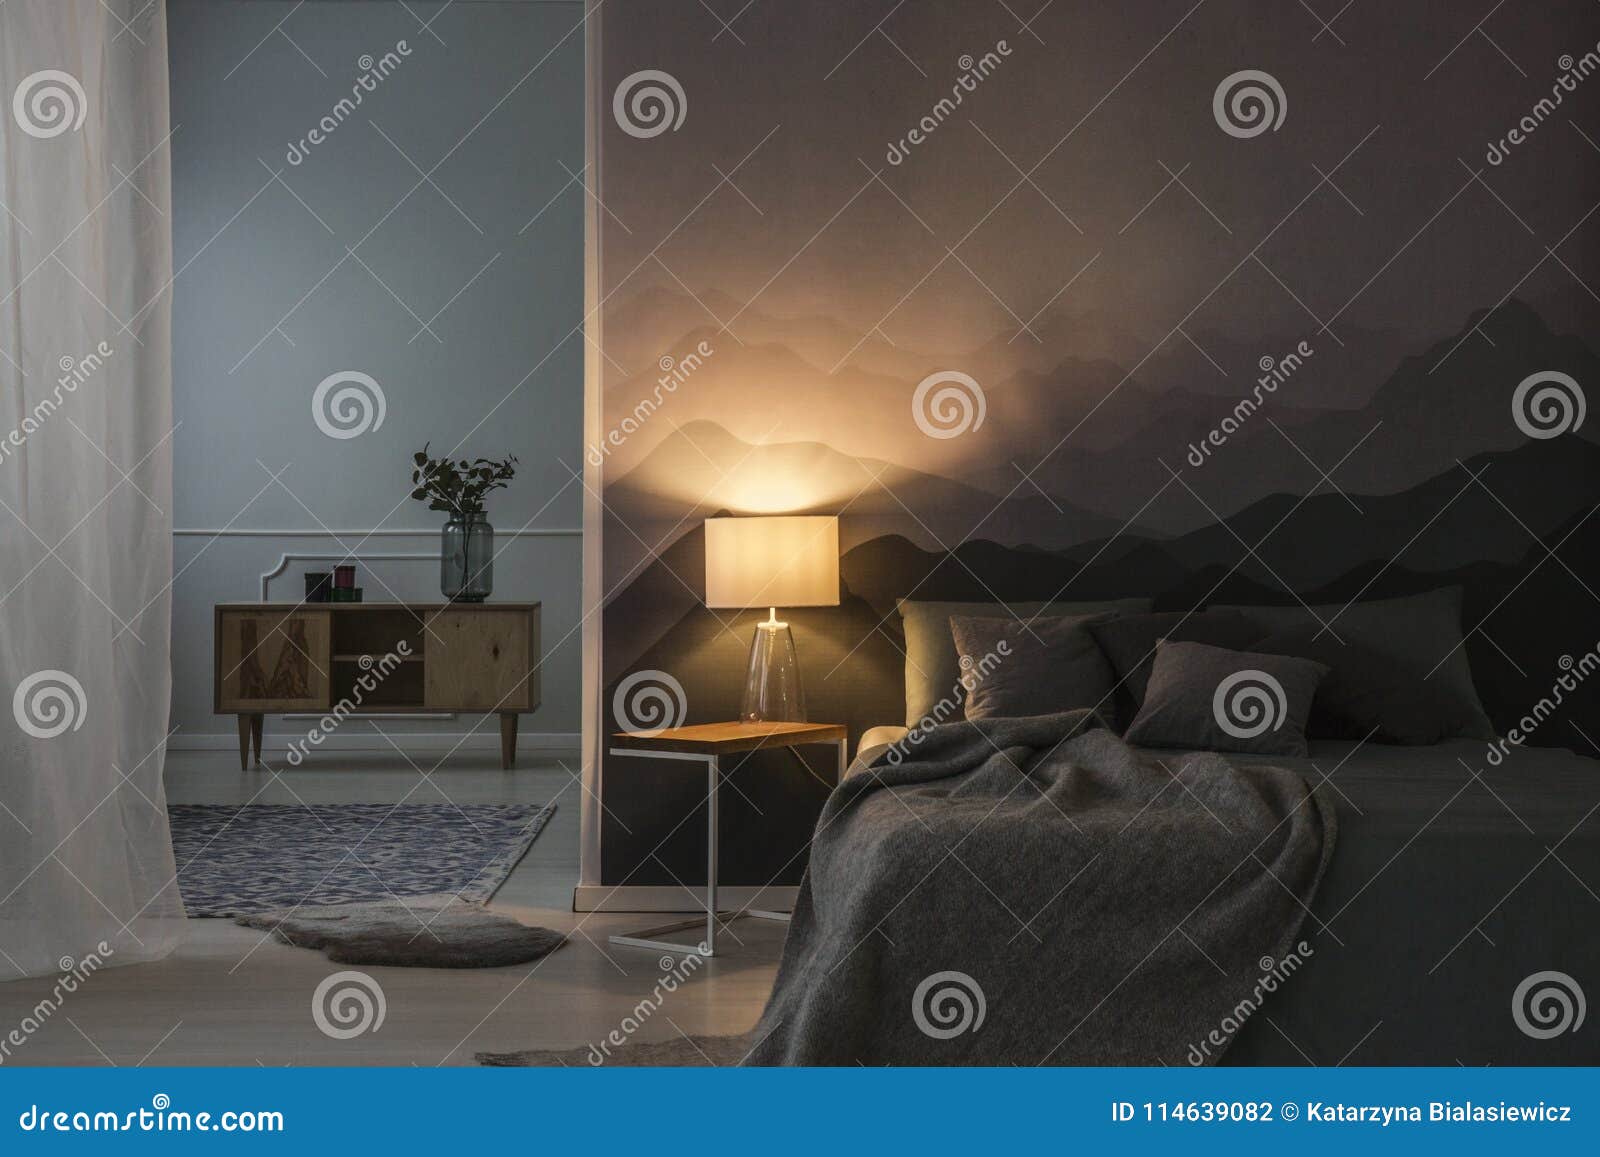 bedroom interior at night